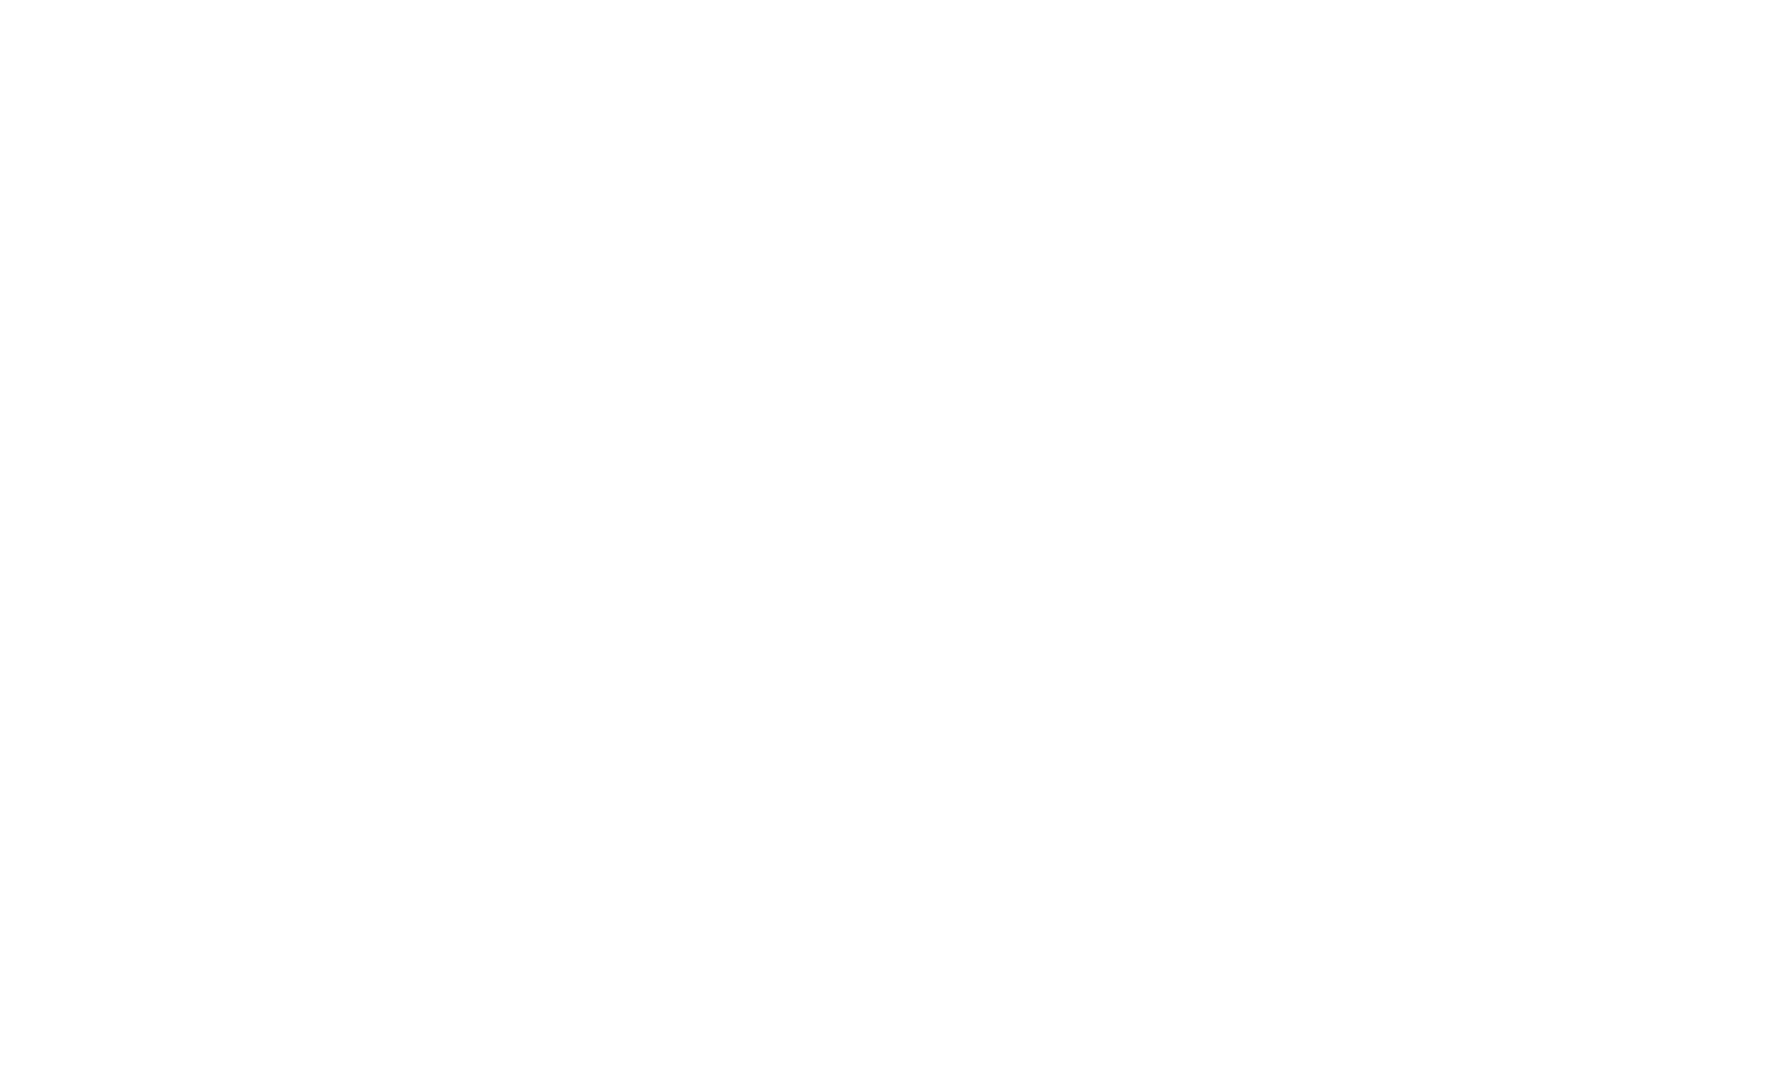 bitech-logo-white-02.png